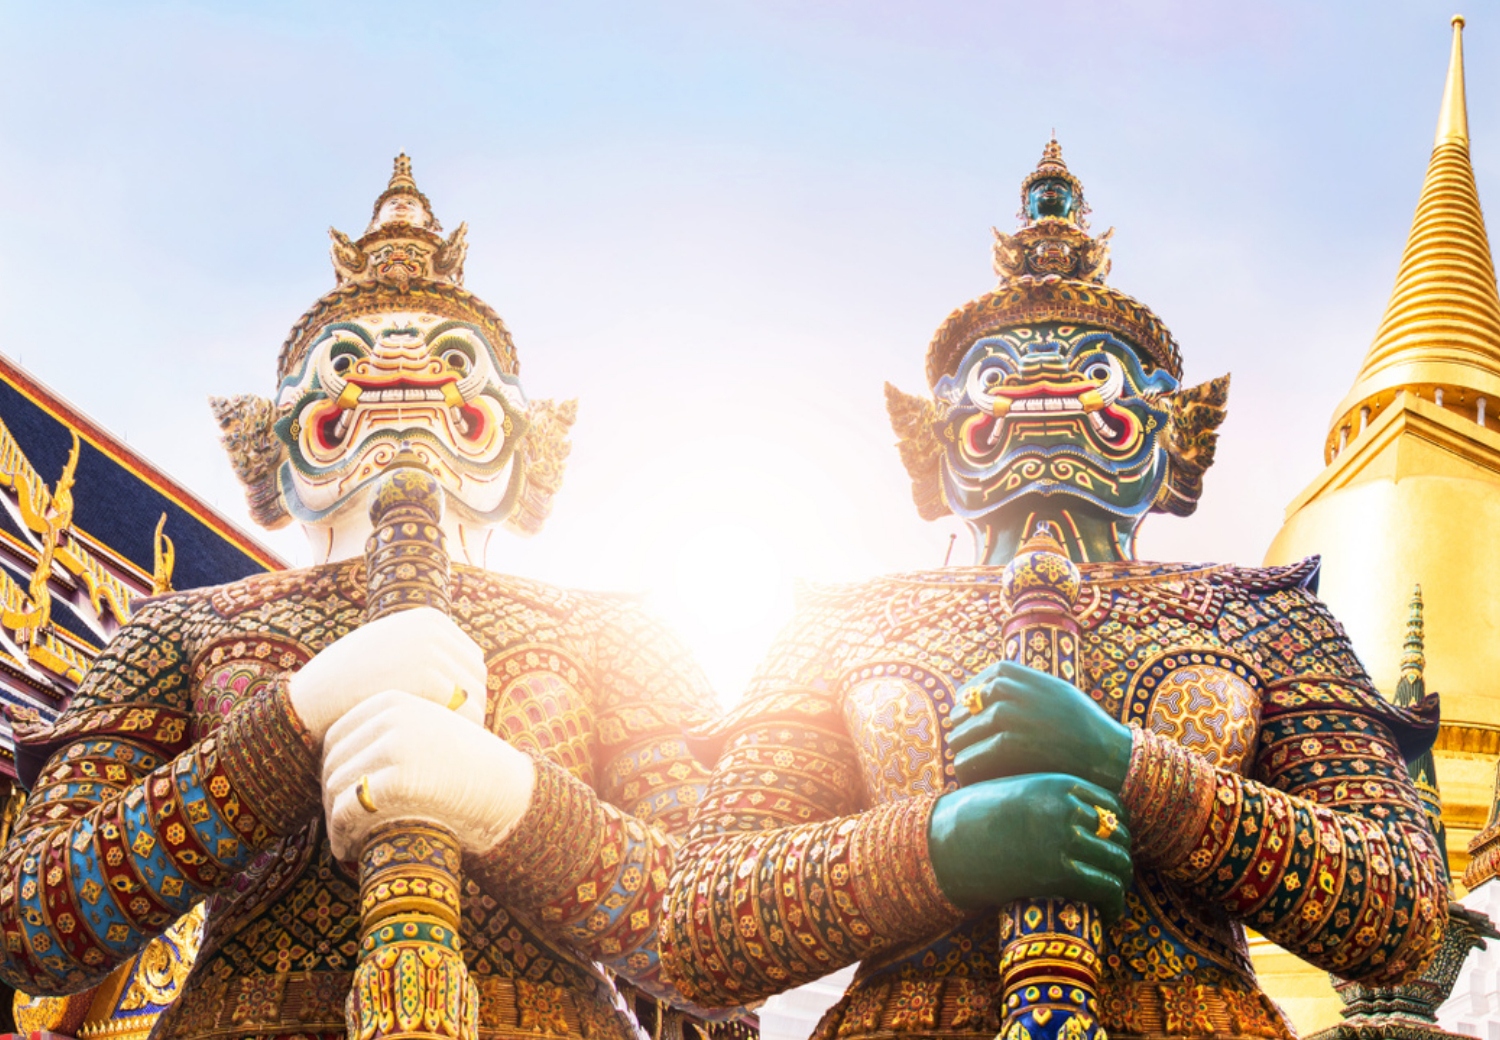 מקדש בודהה האזמרגד - Temple of the Emerald Buddha - Wat Phra Kaew